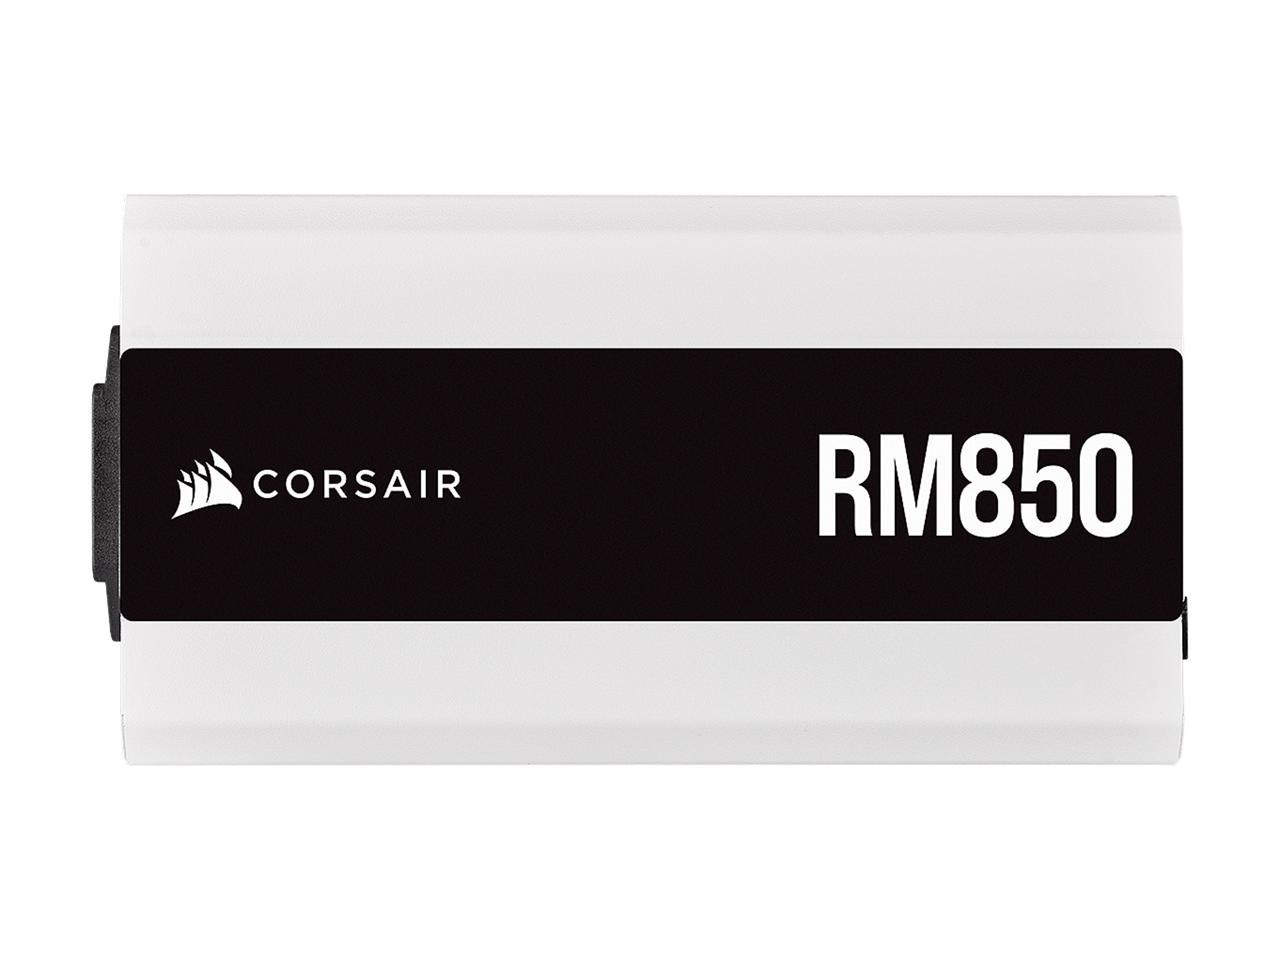 CORSAIR RM850 2021 WHT